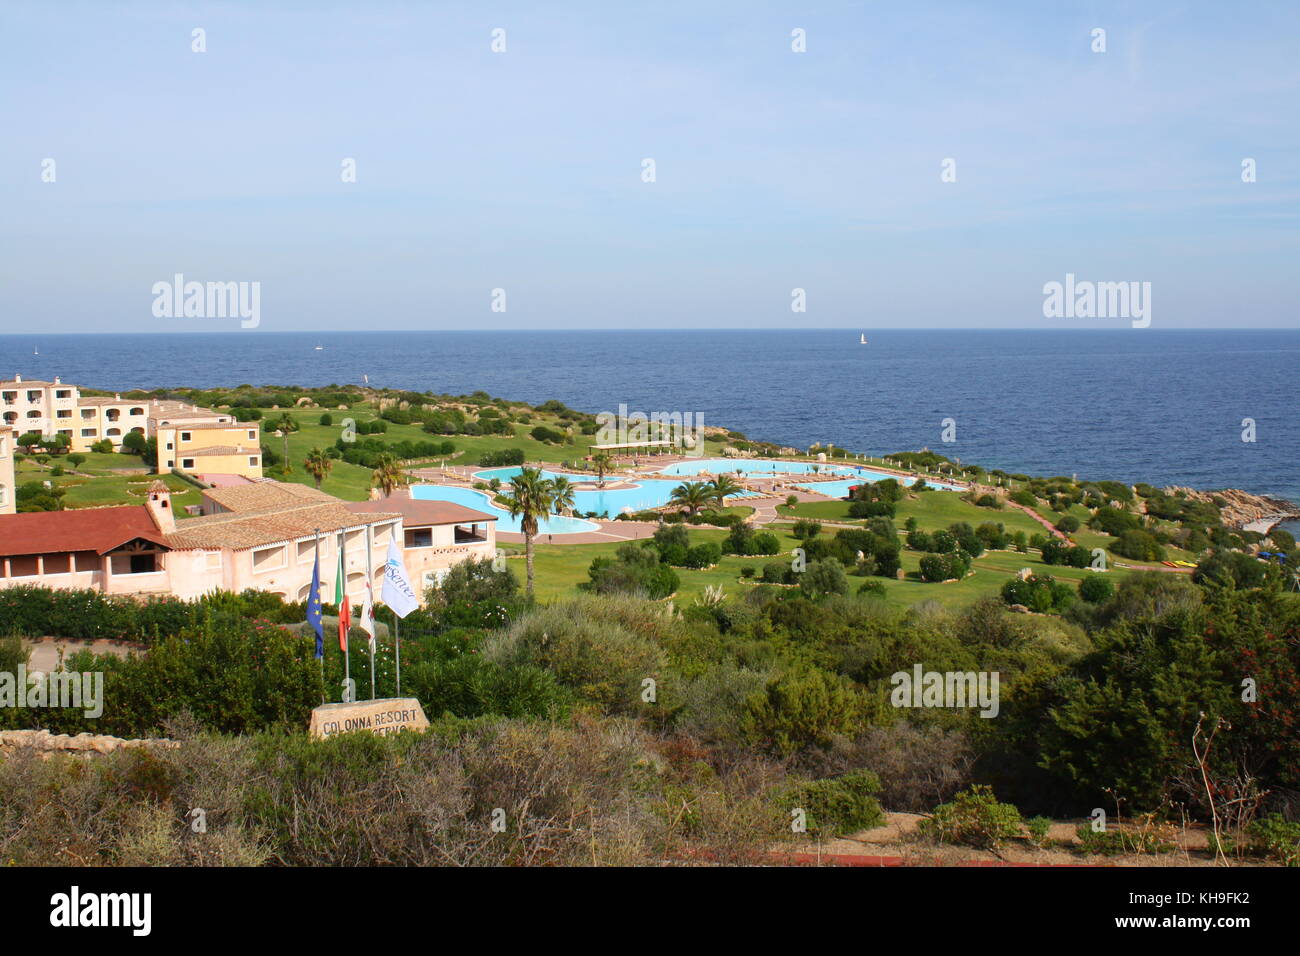 Ein beach resort für die reichen Leute in Porto Cervo, Sardinien, Italien. Stockfoto